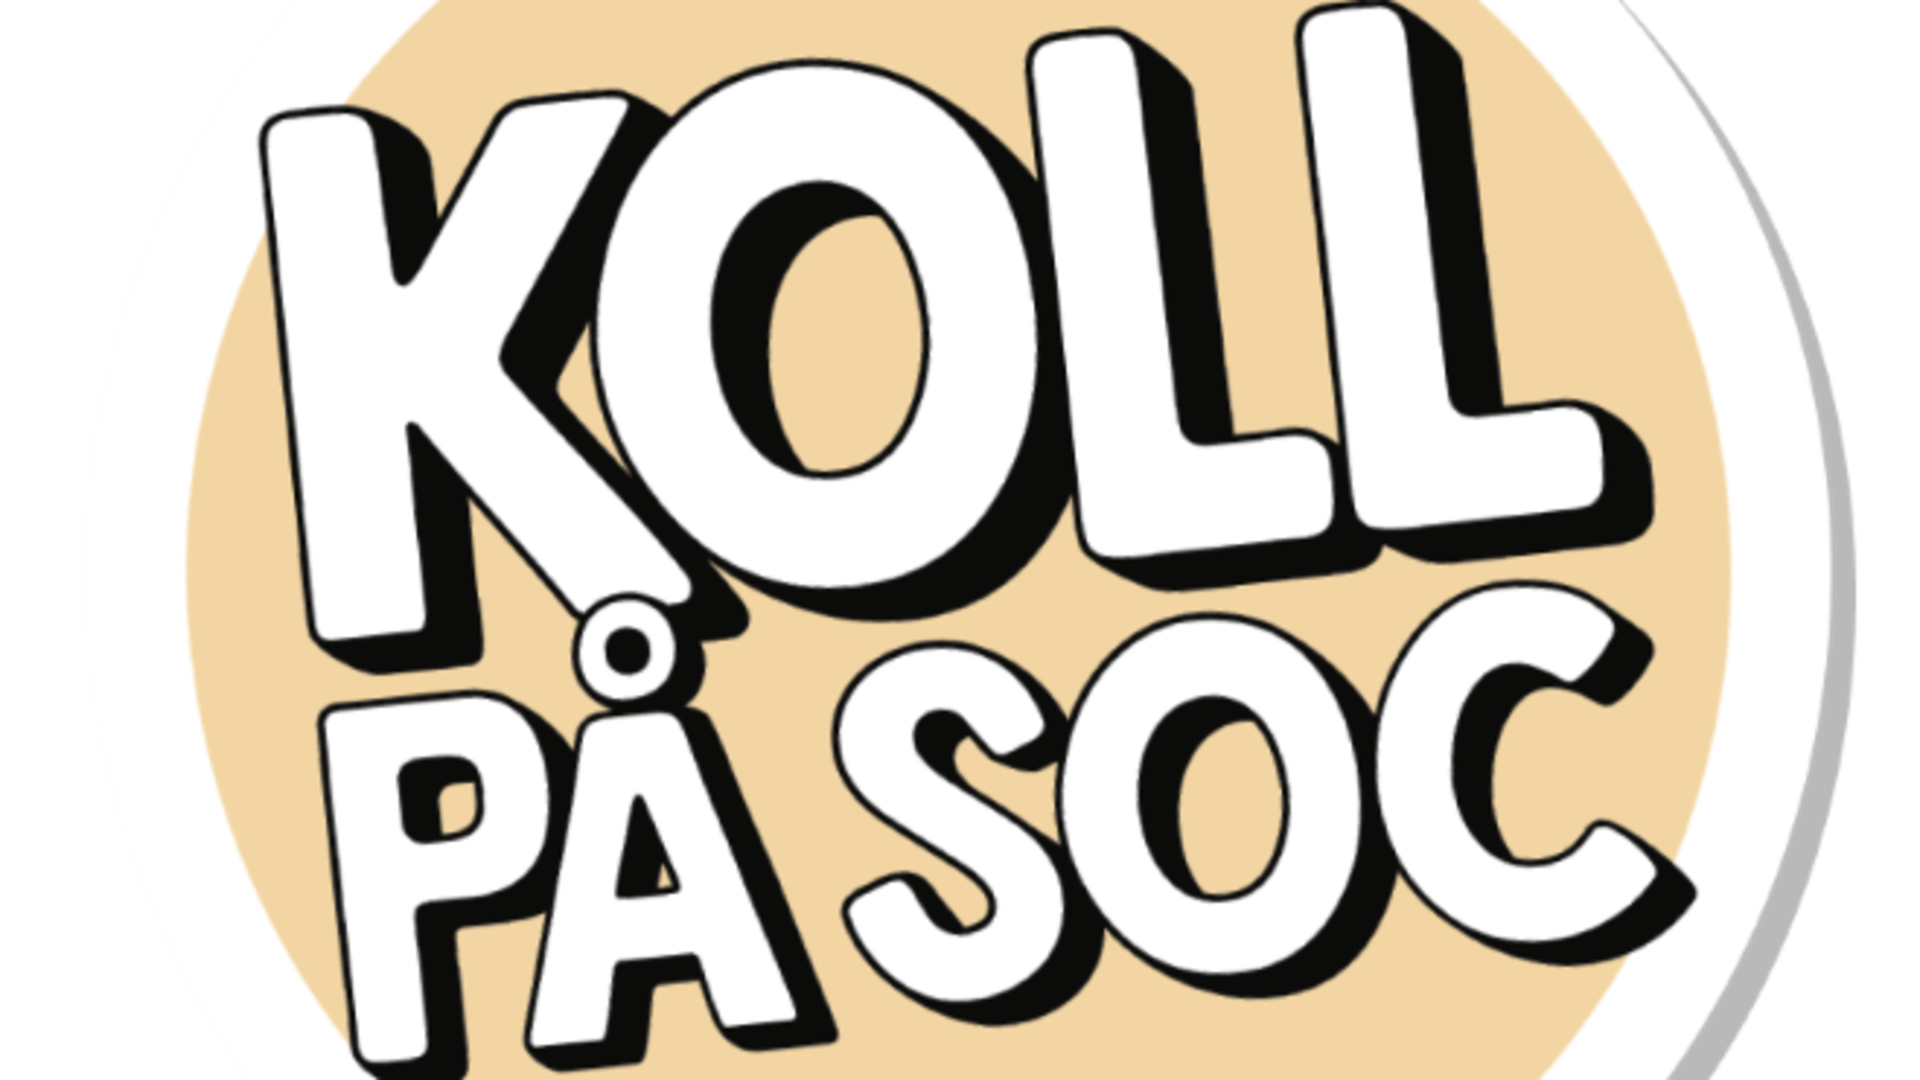 Logotyp för Koll på soc